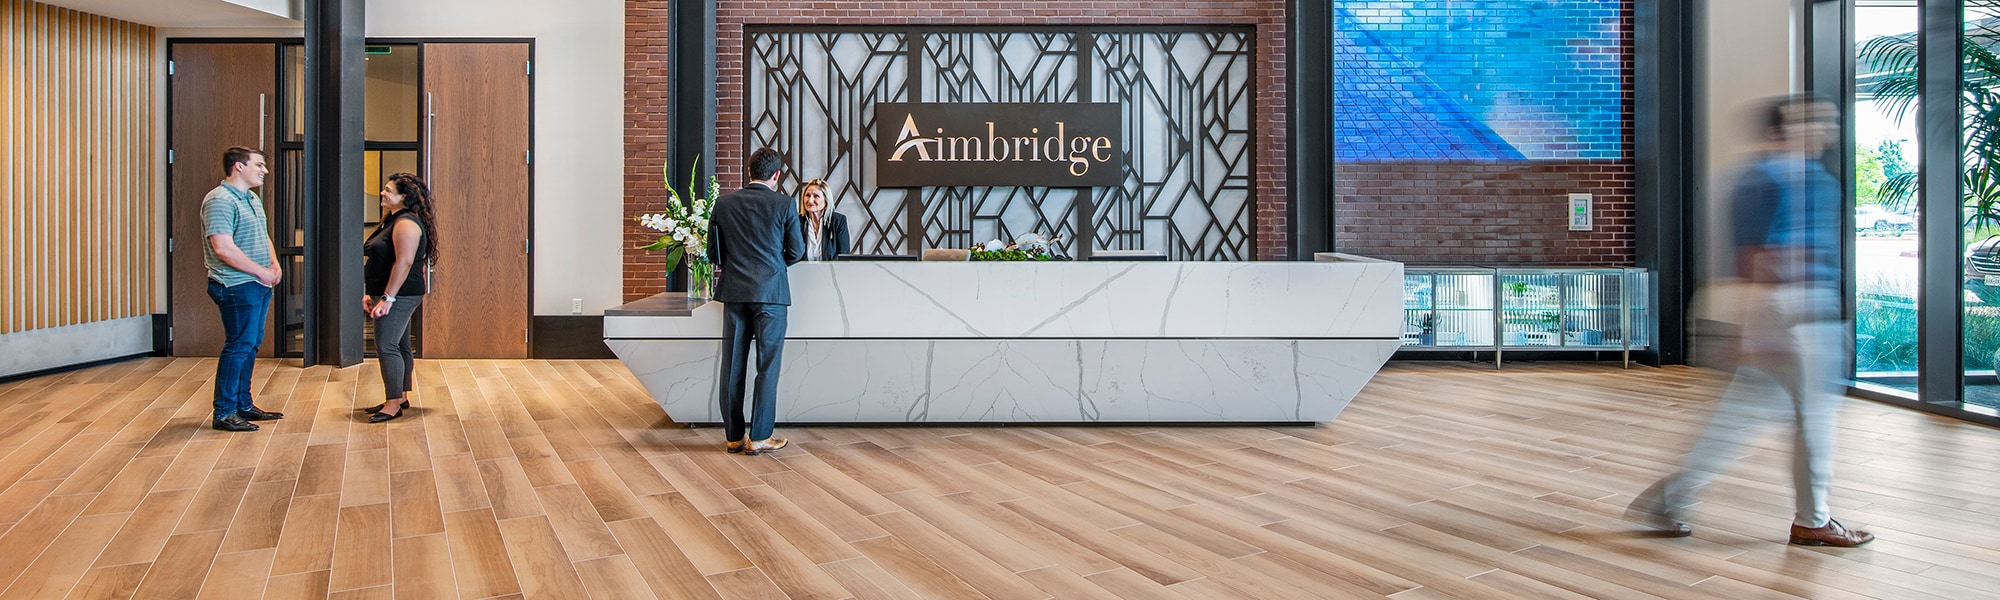 Lobby of Aimbridge Hospitality